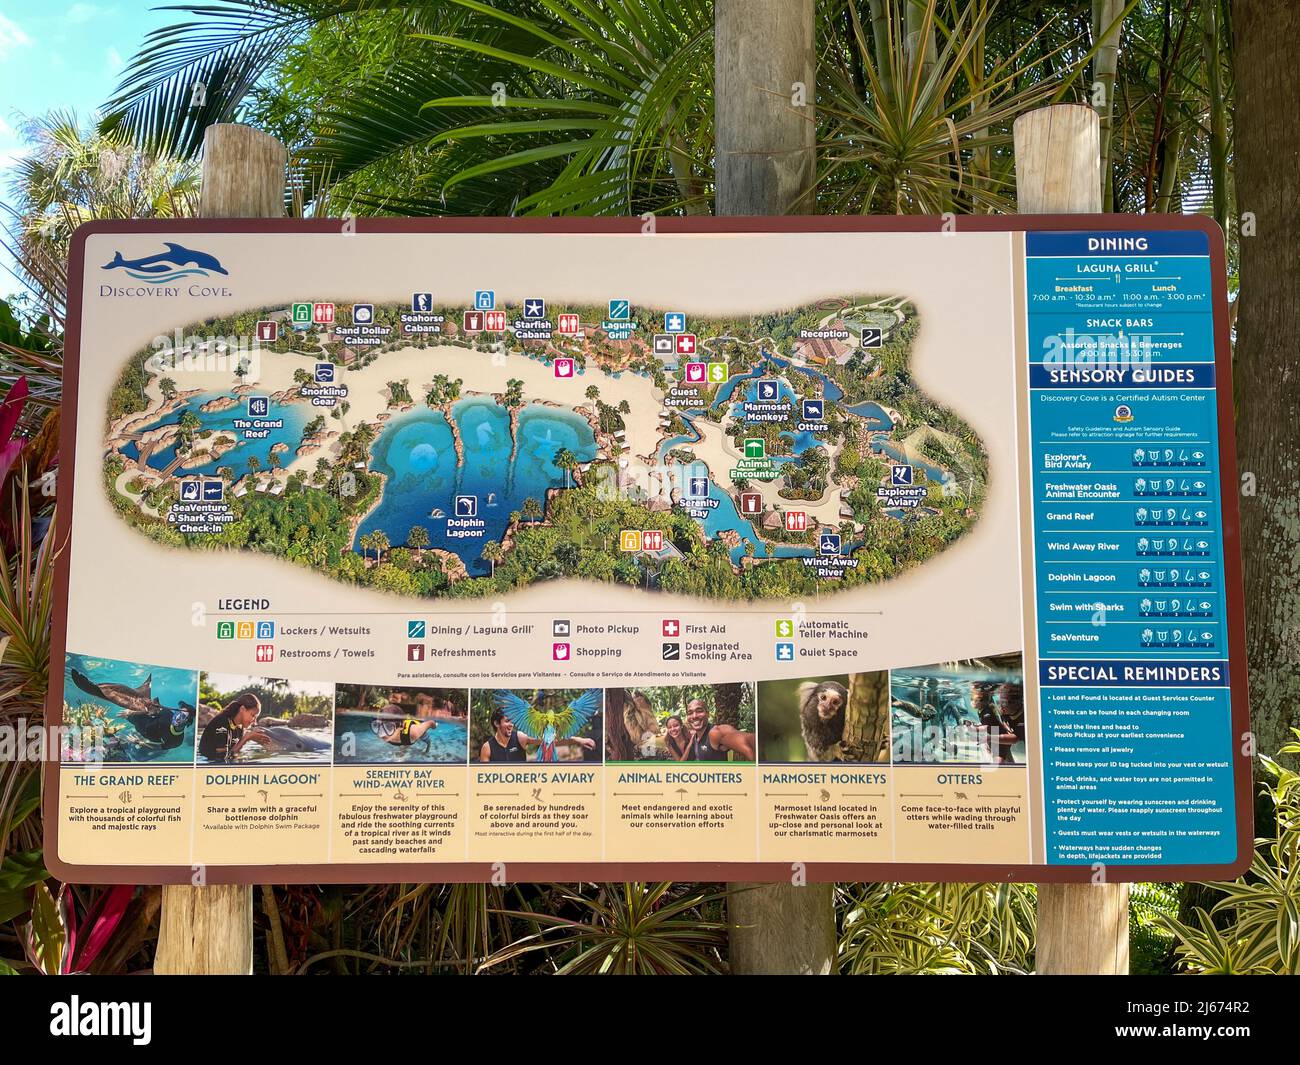 Orlando, FL USA - 21 mai 2021 : carte du parc Discovery Cove à Orlando, Floride. Banque D'Images